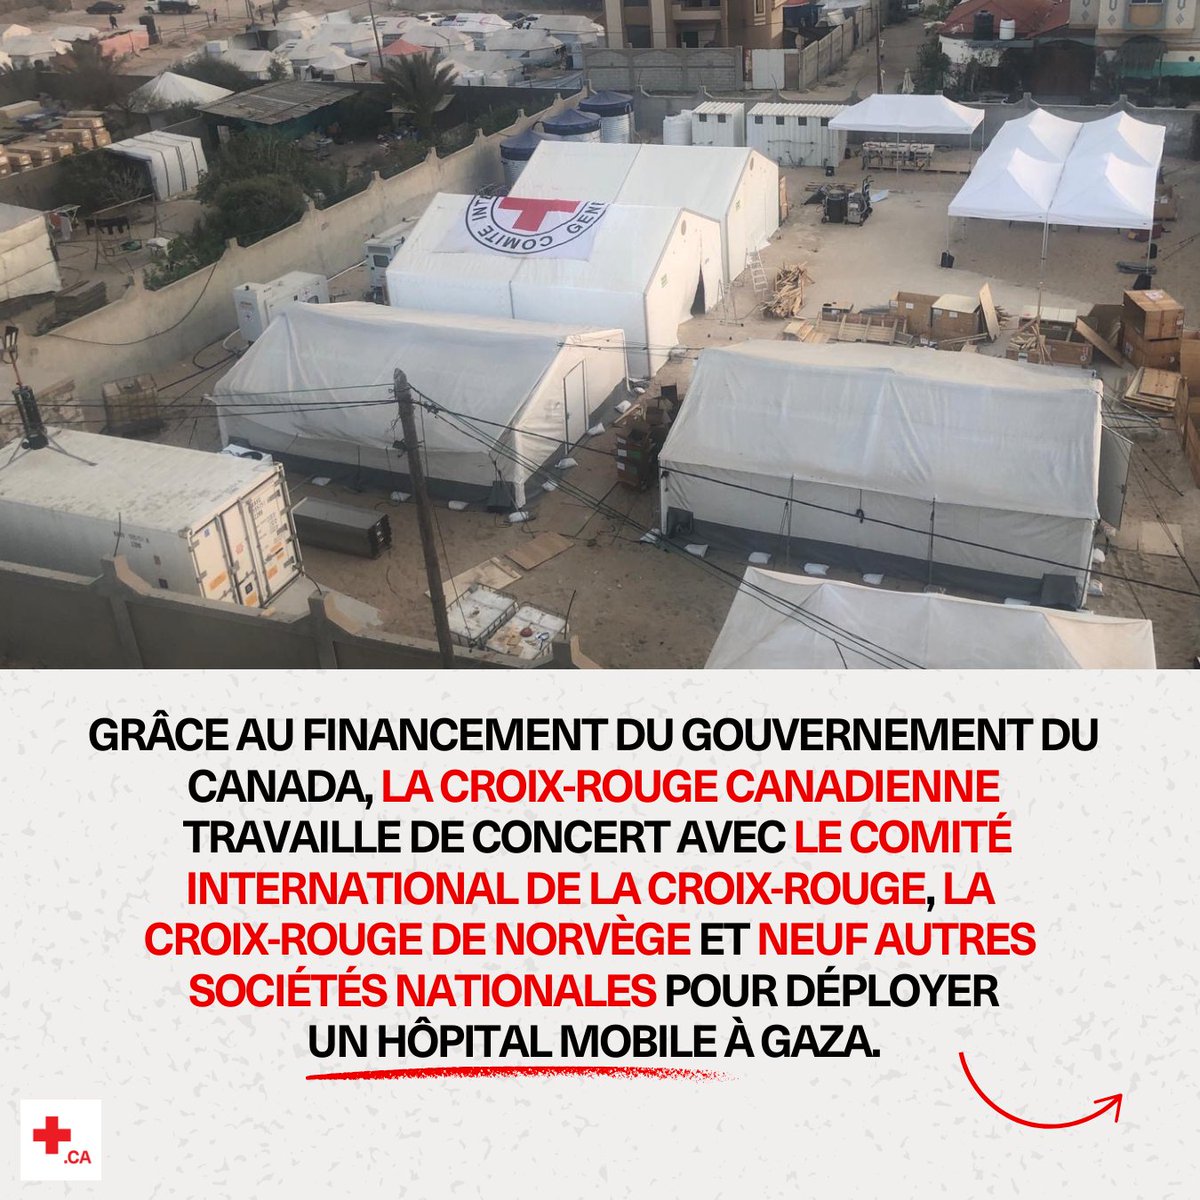 (2/6) La Croix-Rouge canadienne, le @CICR_fr , la Croix-Rouge de Norvège (@rodekorsnorge ) et neuf autres Sociétés nationales ont ouvert un hôpital mobile à #Rafah afin de répondre à certains des énormes besoins médicaux.